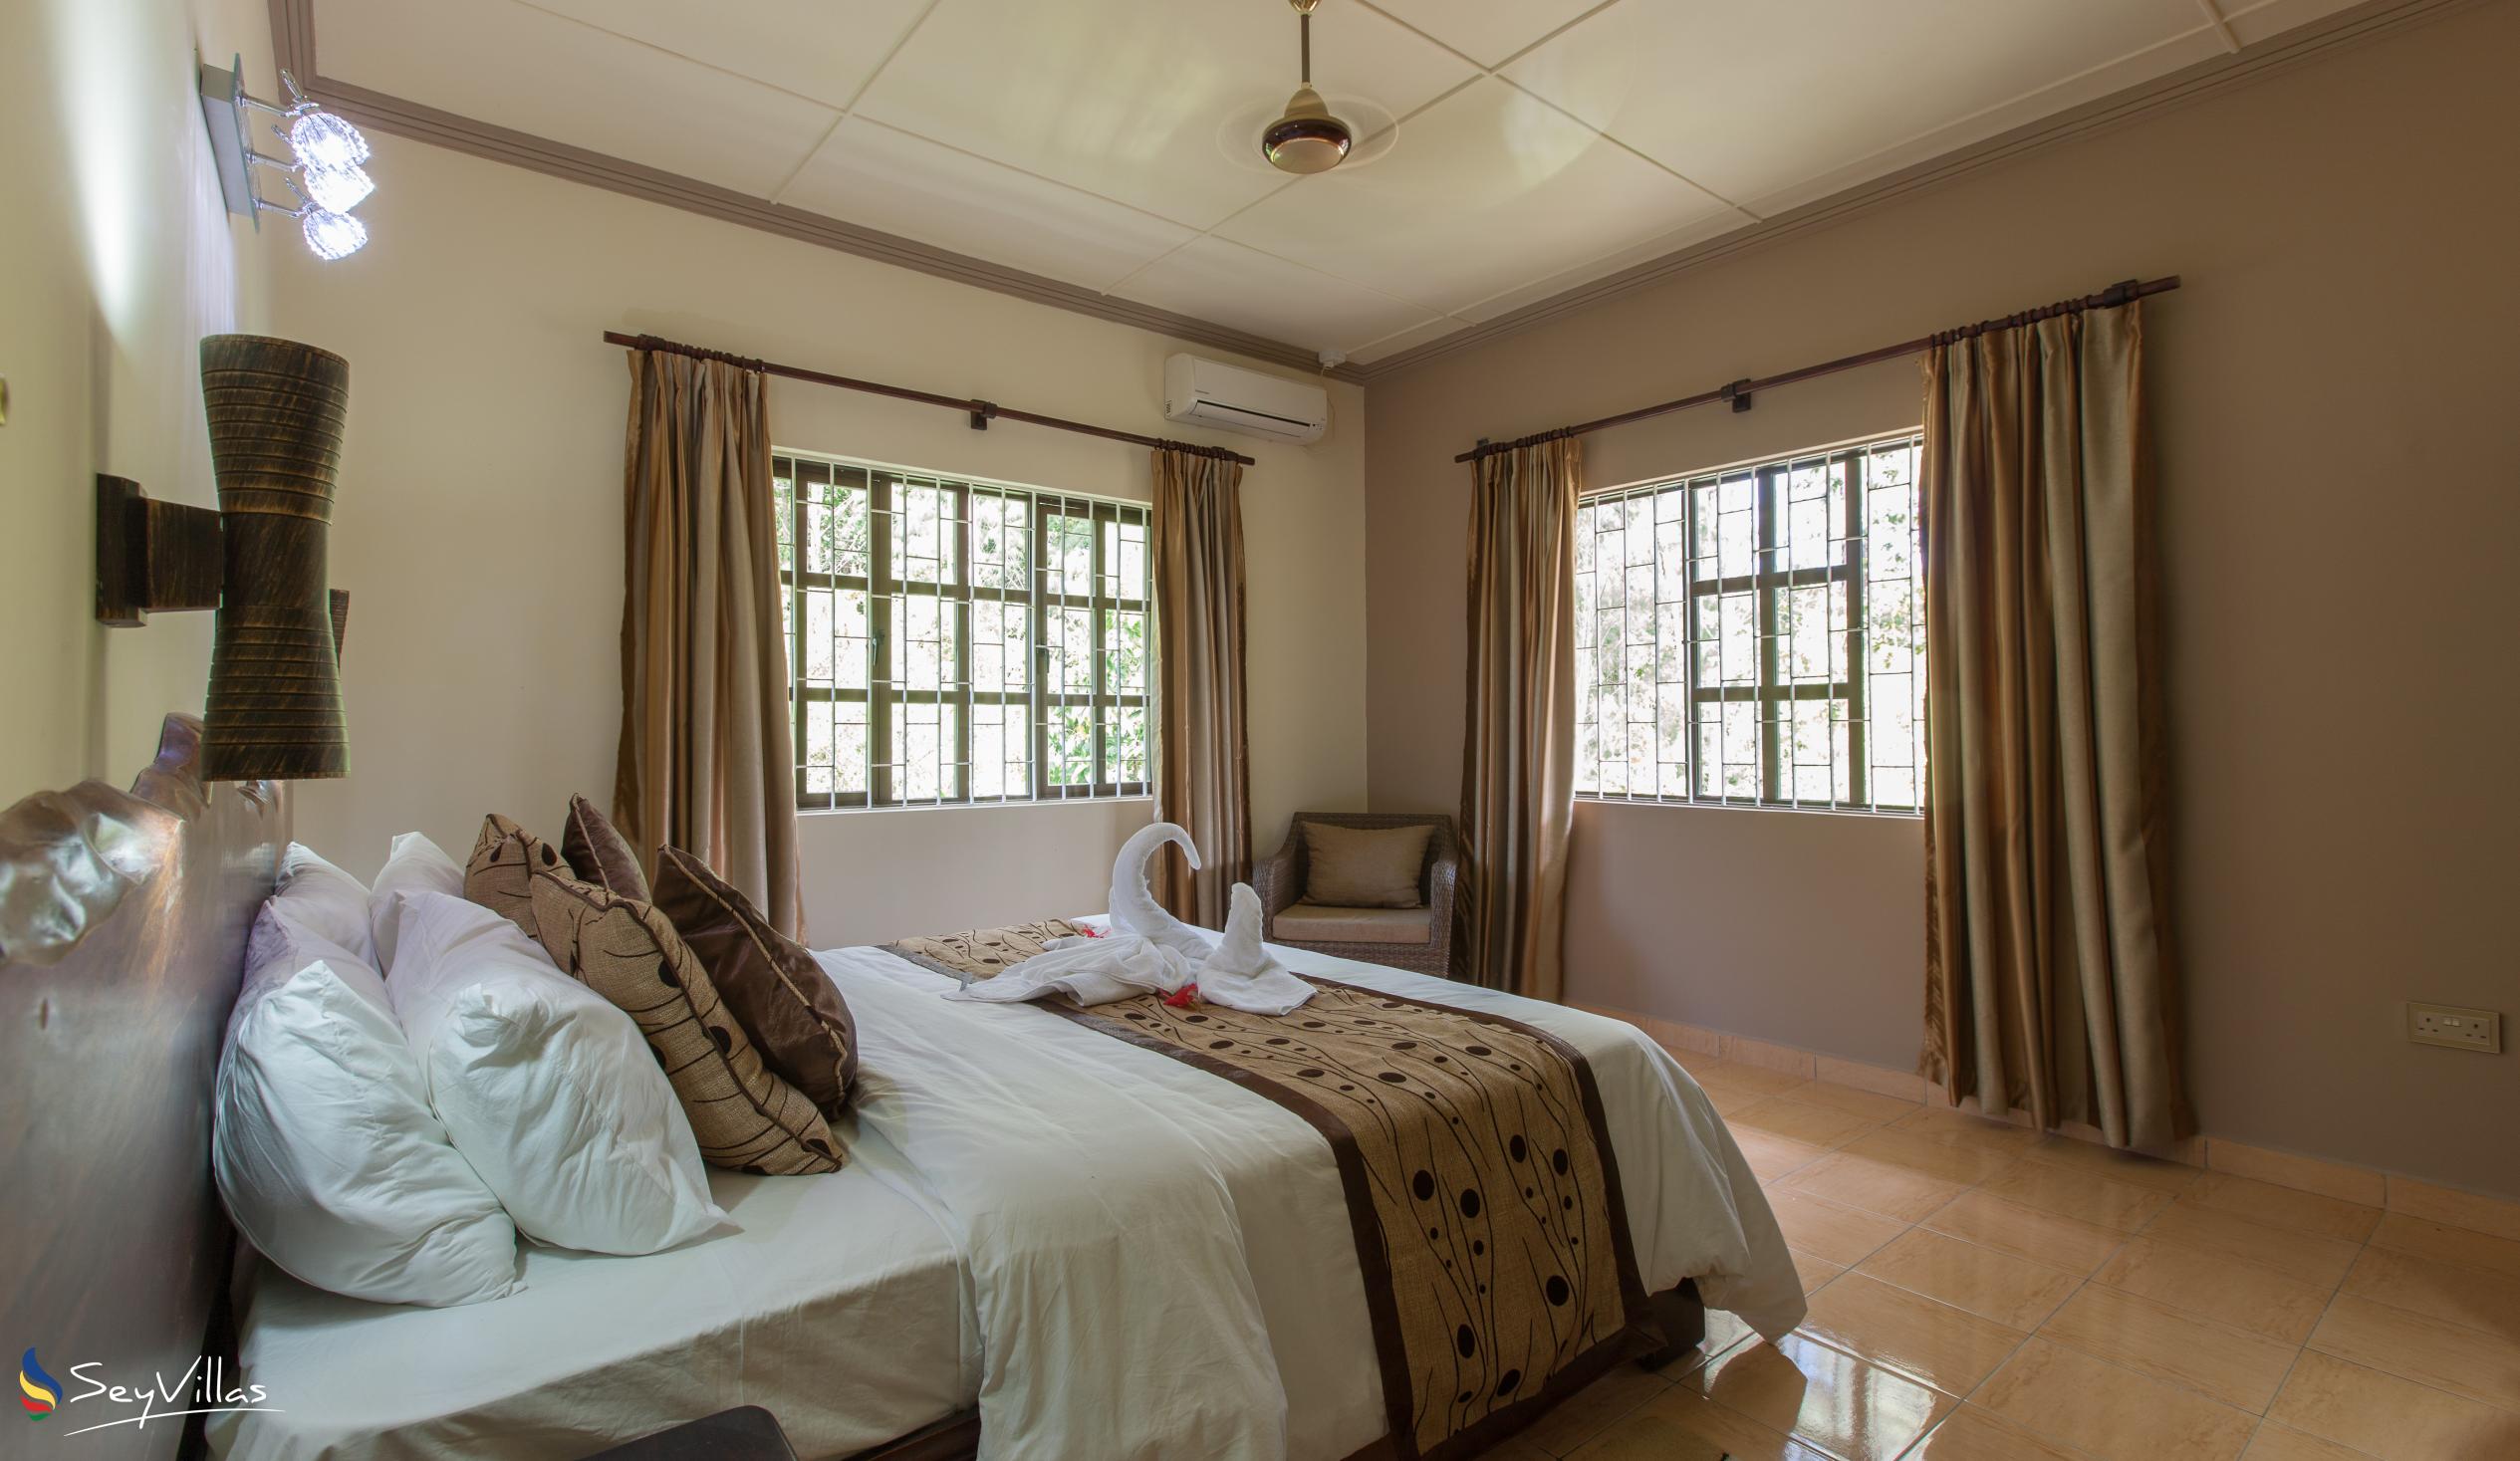 Foto 48: Chez Bea Villa - Appartamento con 2 camere - Praslin (Seychelles)